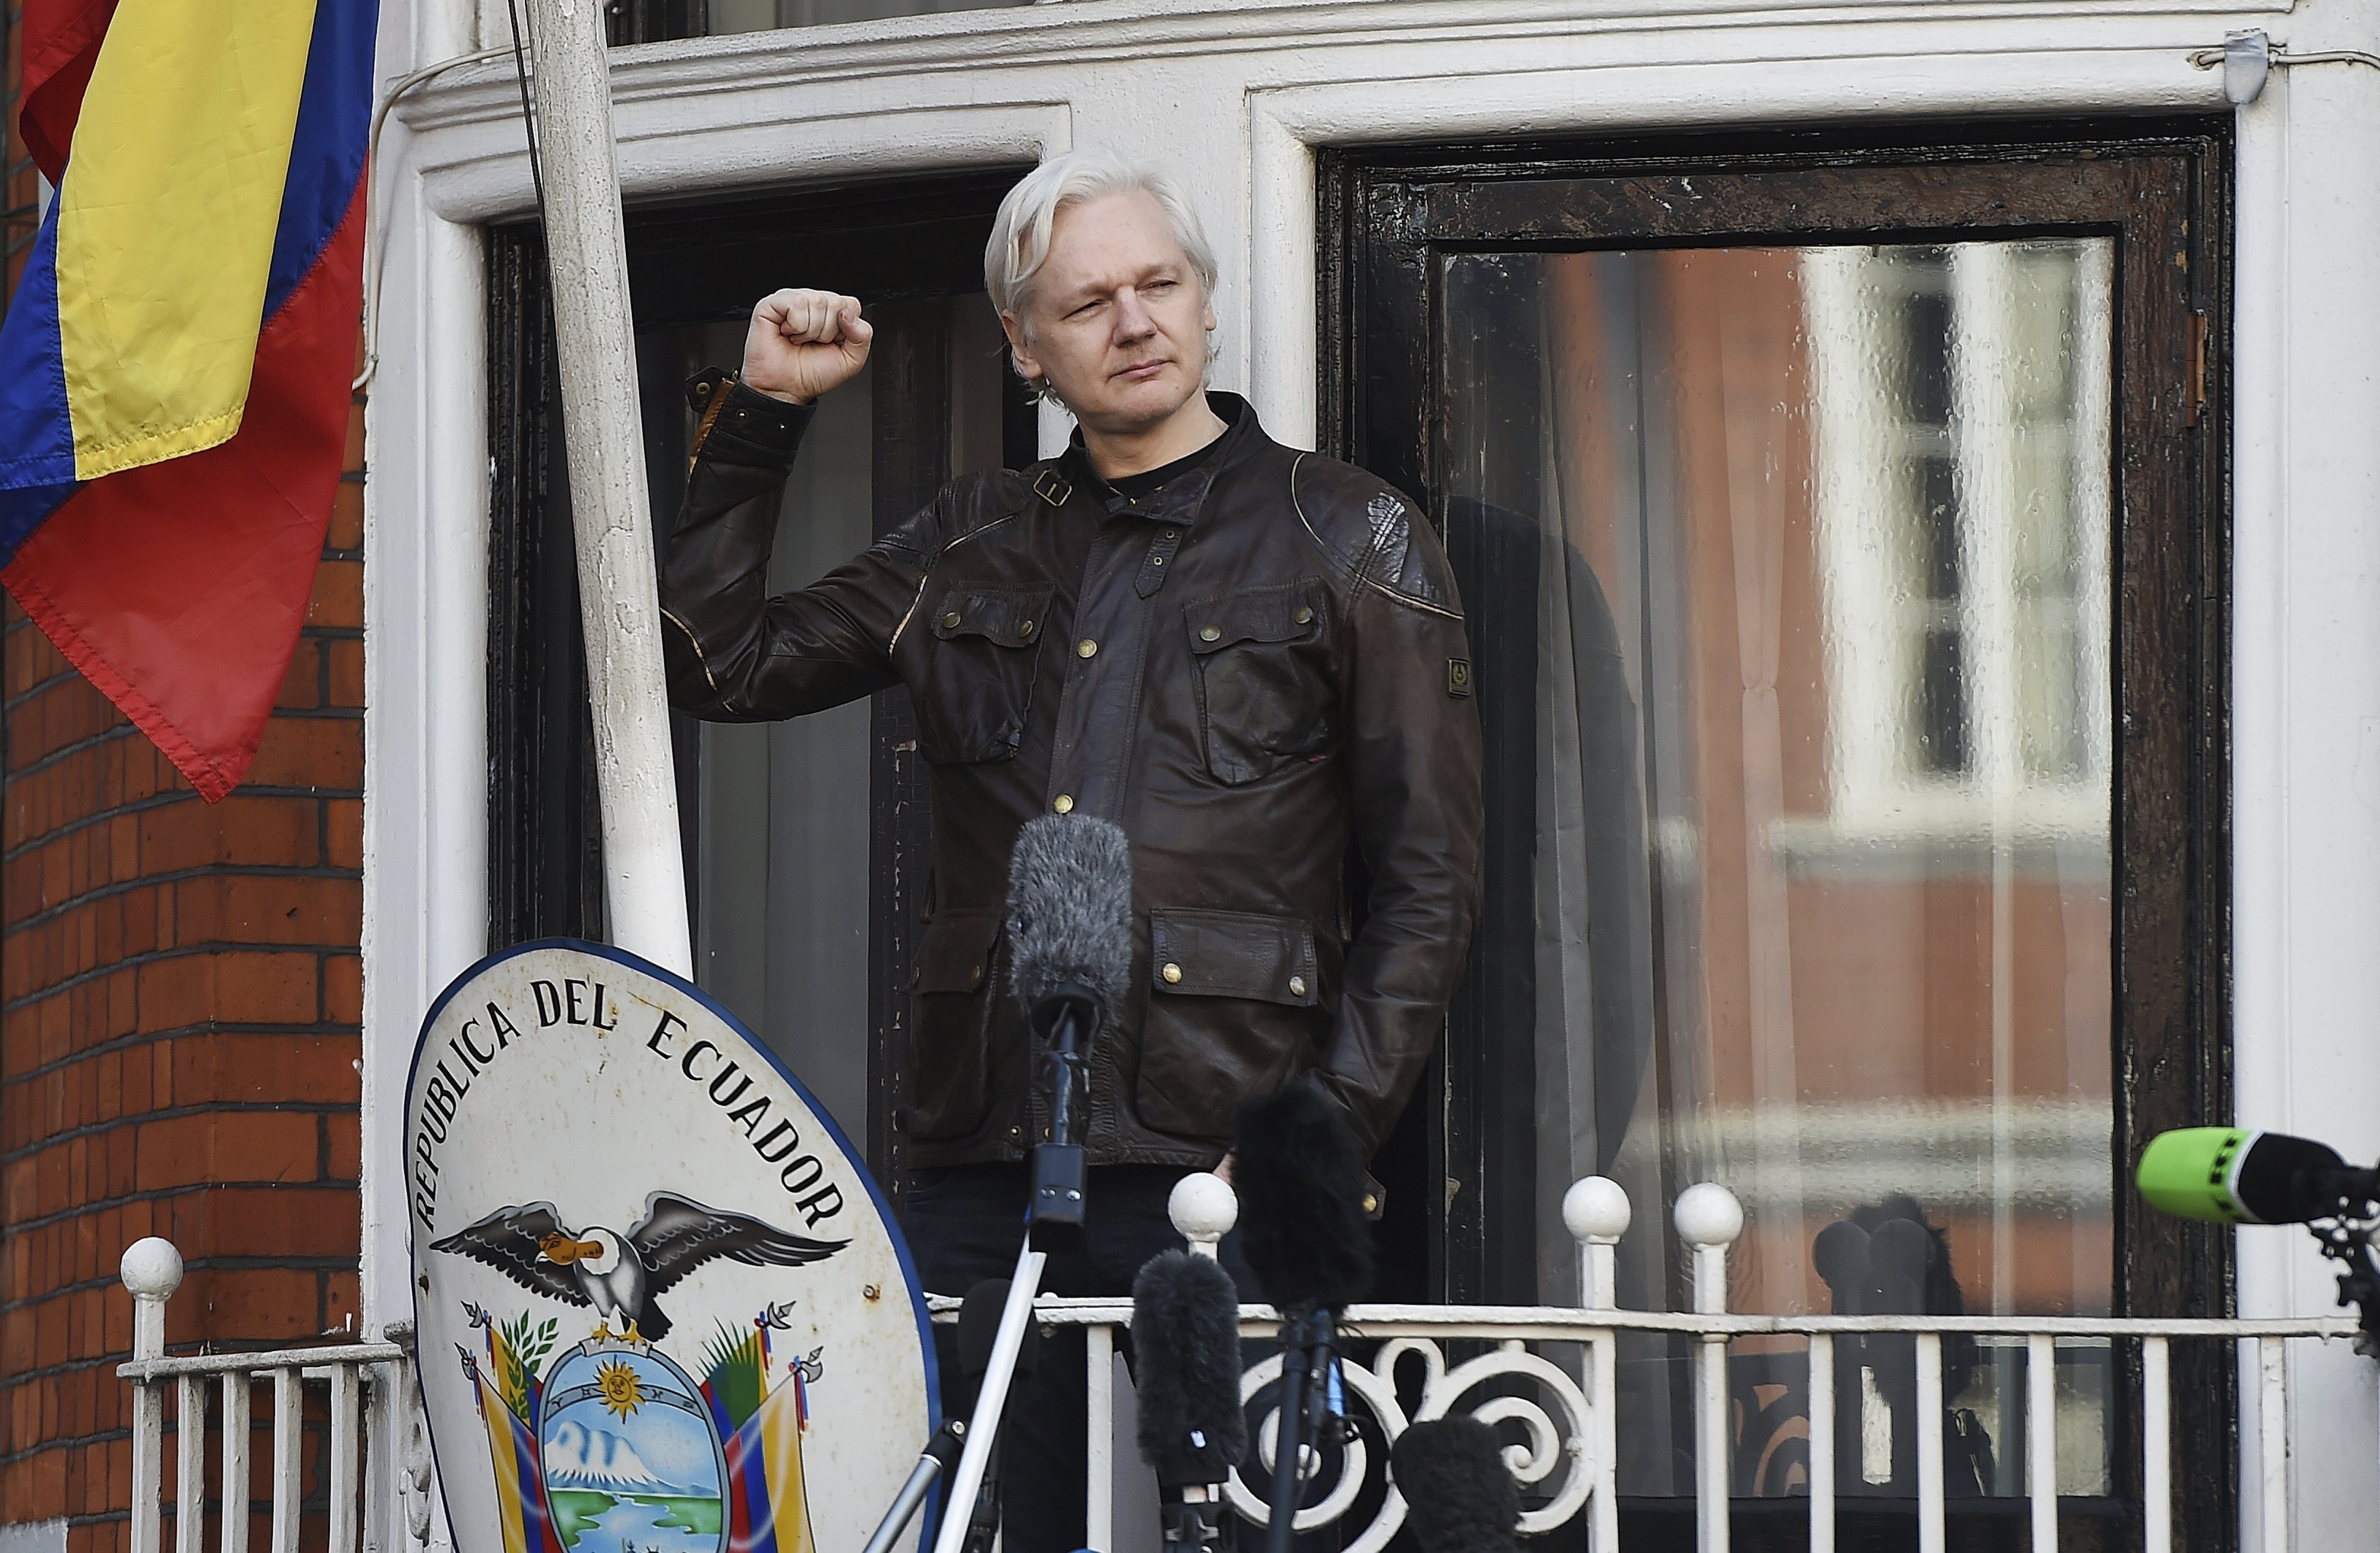 Revelen el contingut dels emails de la trama d'extorsió contra Assange